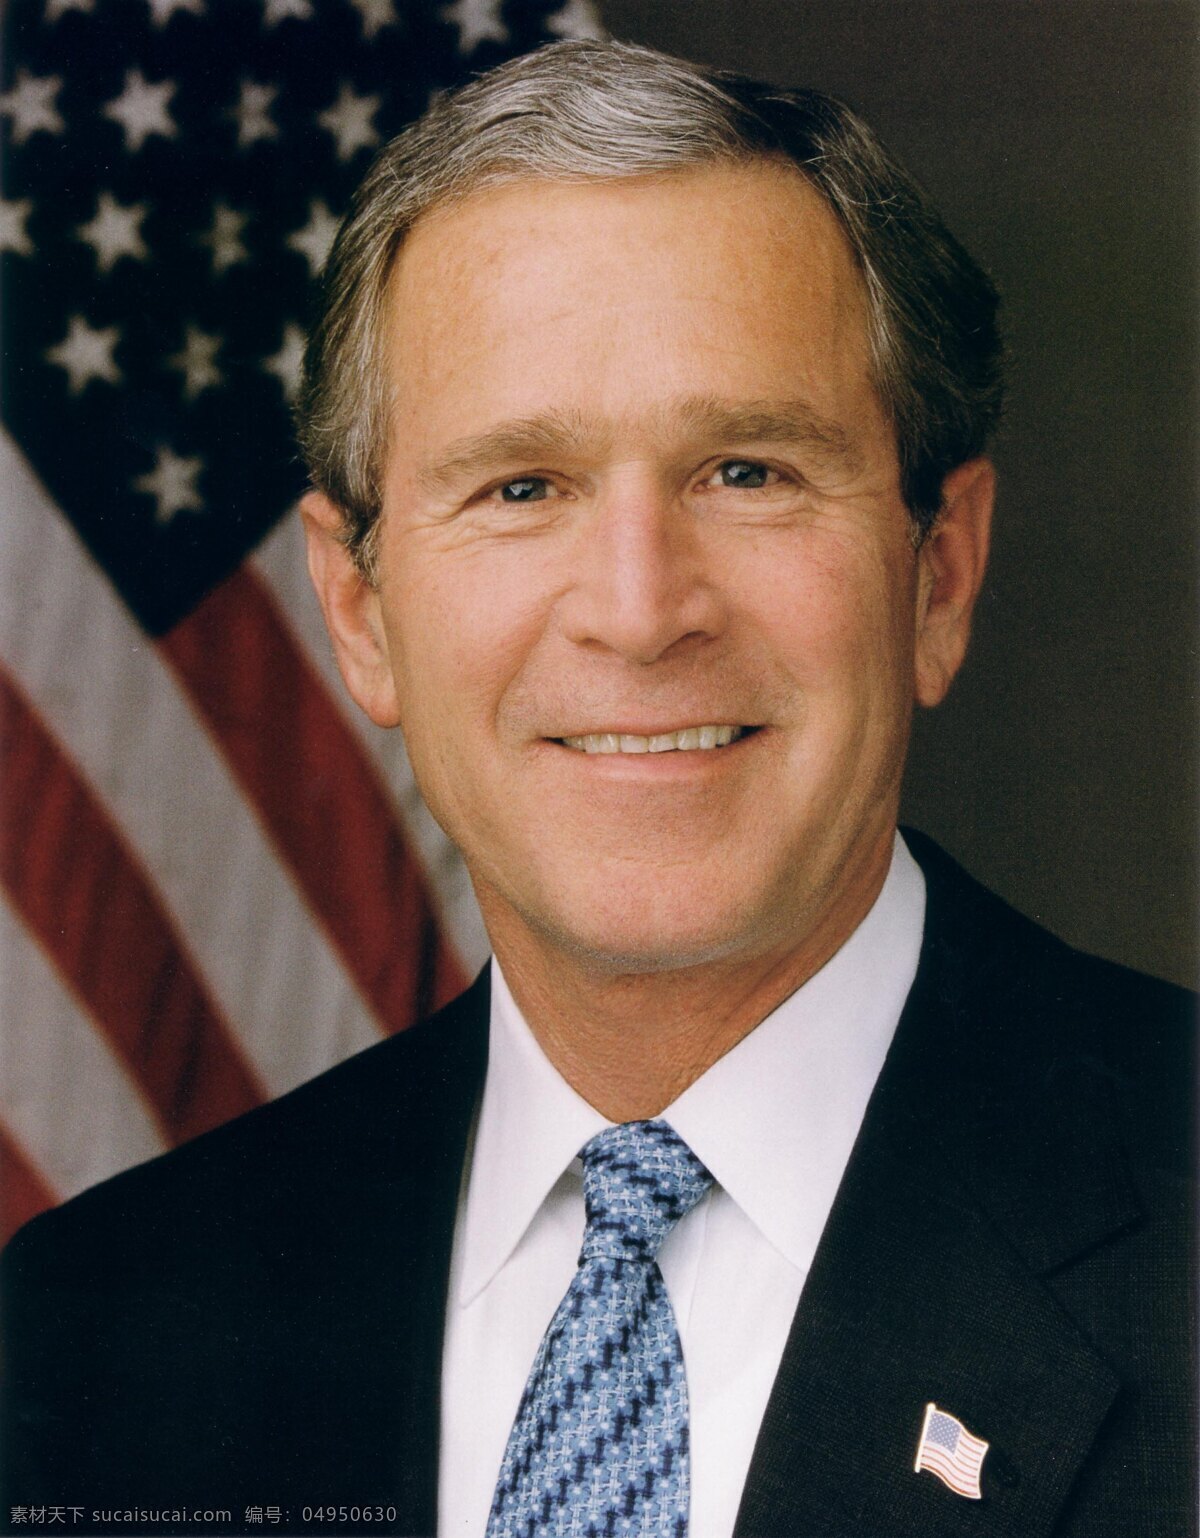 布什图片素材 明星偶像 美国总统 布什 明星图片 人物图片